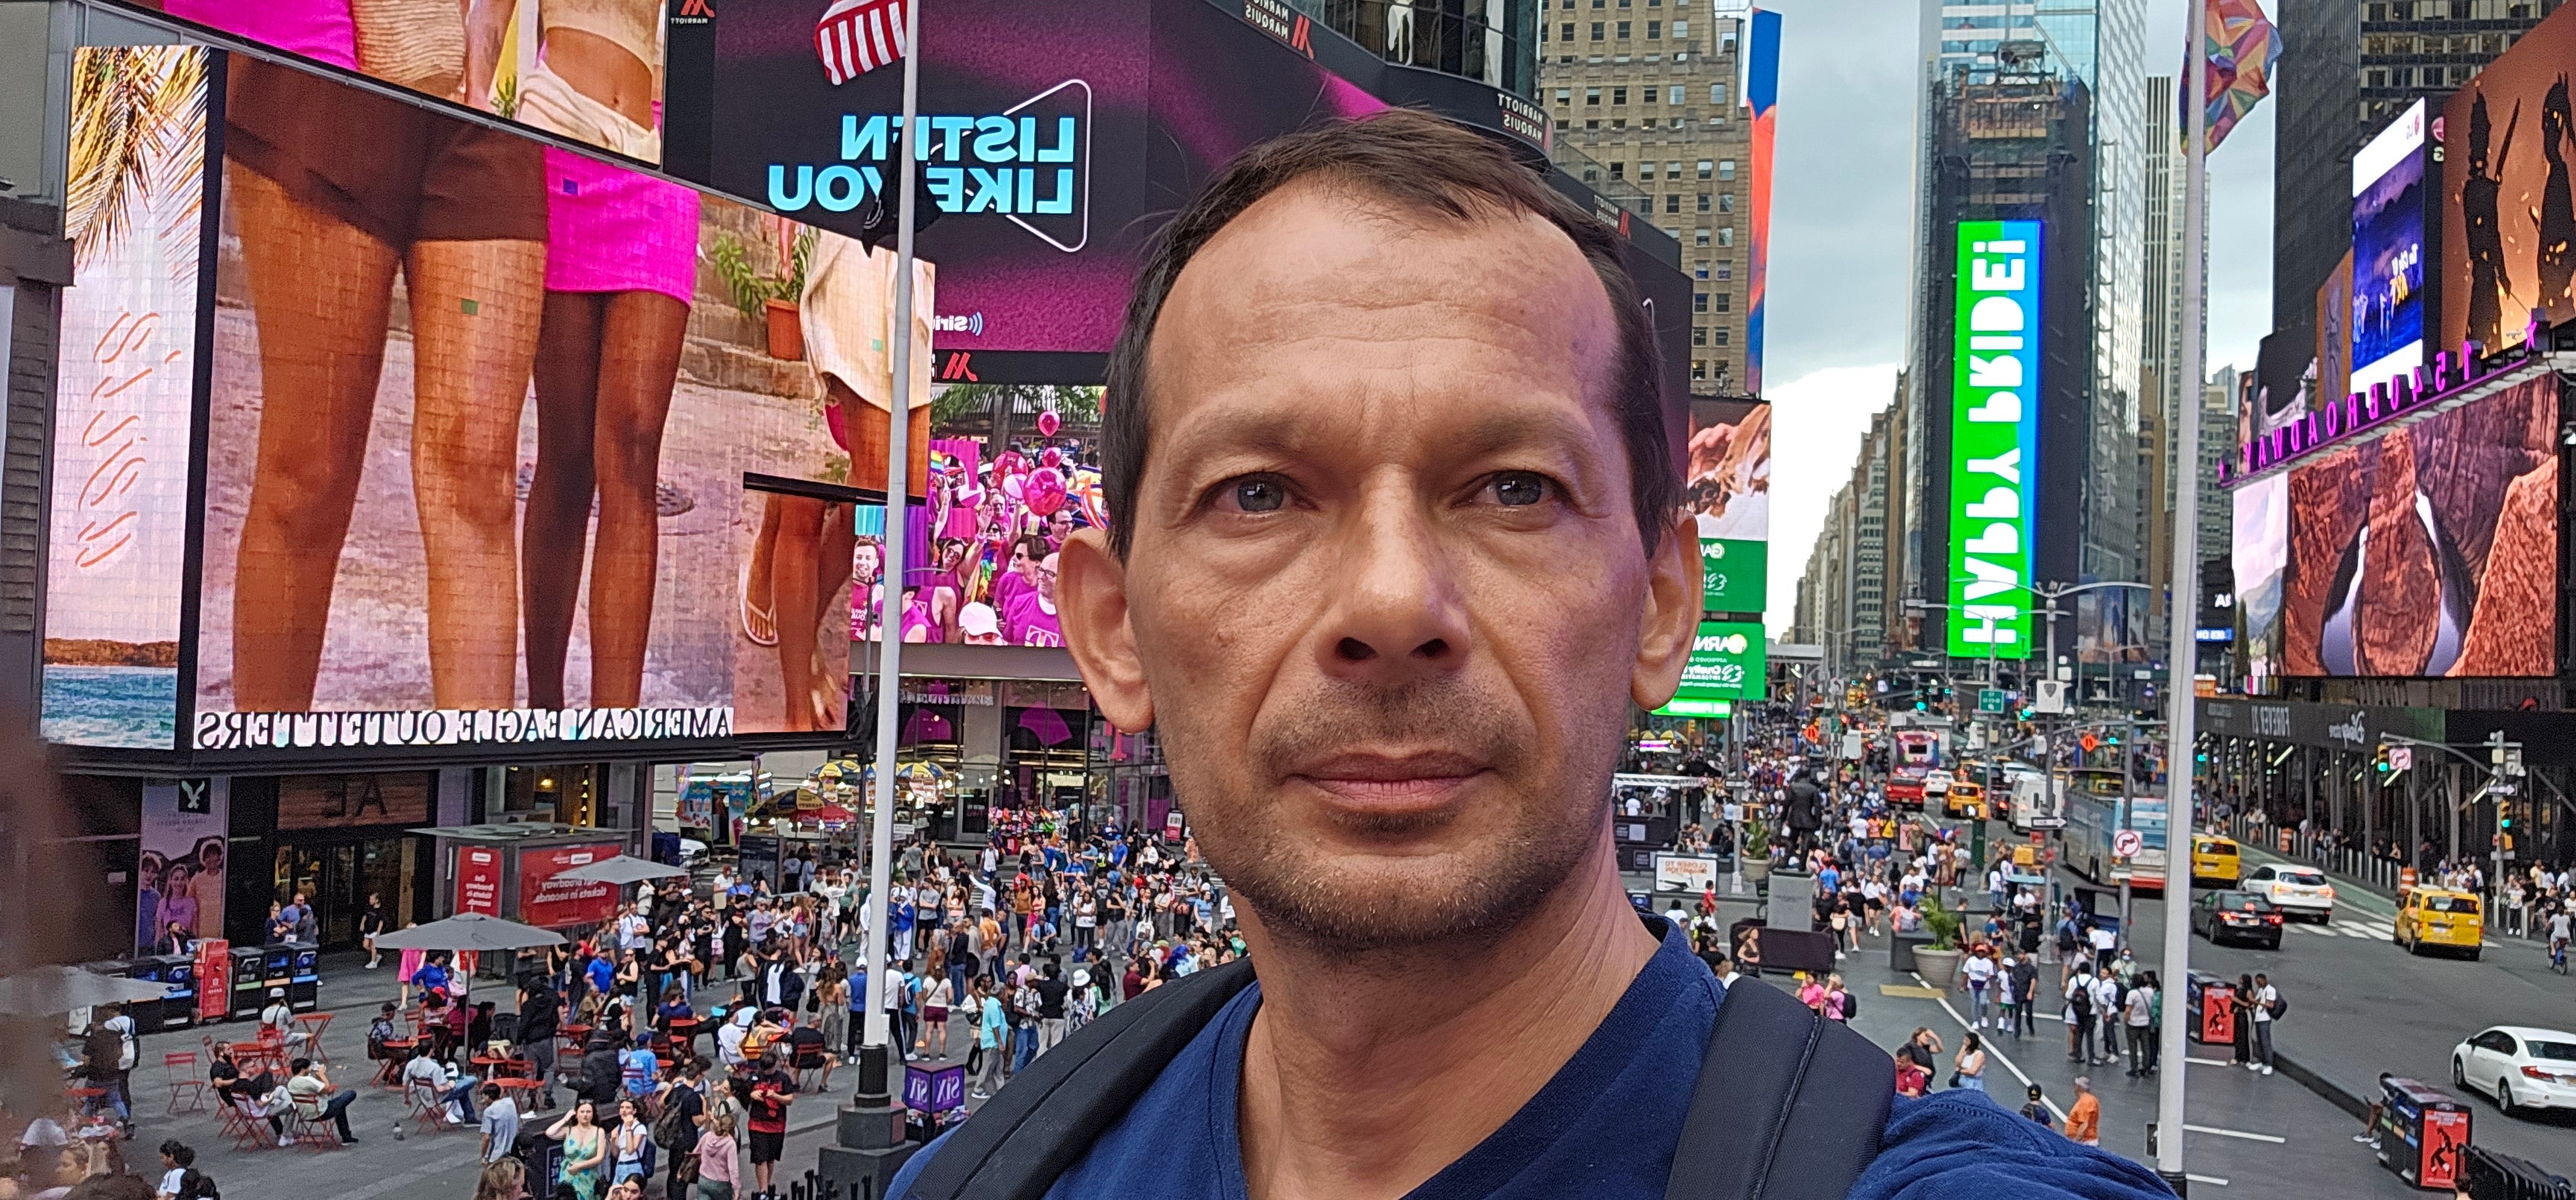 Time Square Transformed: Testemunhe a magia do dia à noite! 